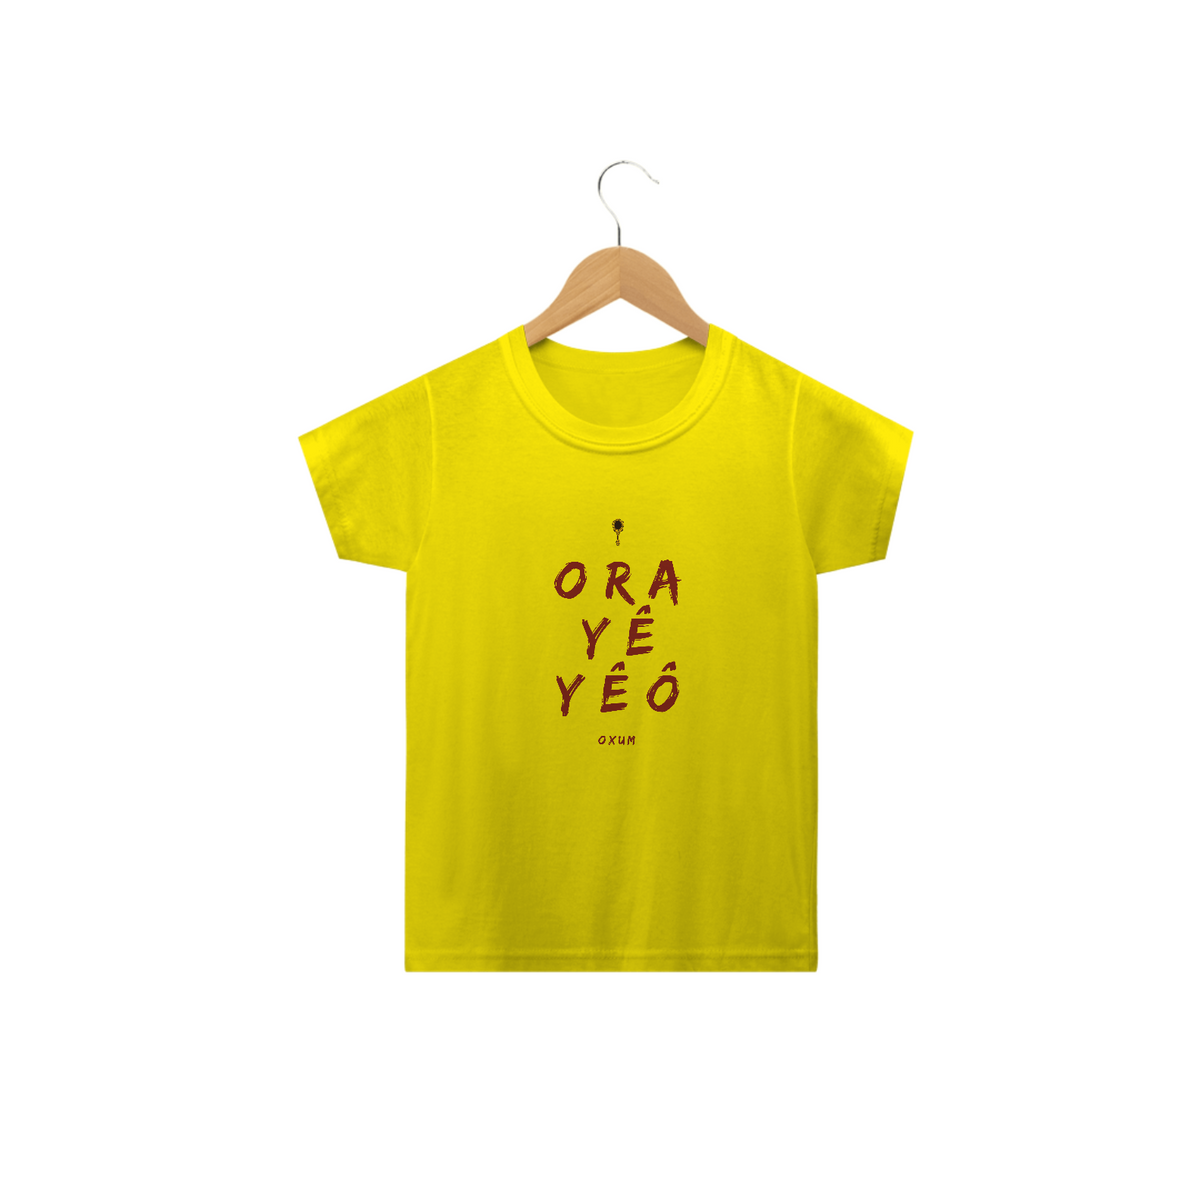 Nome do produto: Camiseta Infantil Osun Oxum - Saudação Òóré Yéyé Osun 100% Algodão Fio 24.1, 145g costura simples e gola ribana